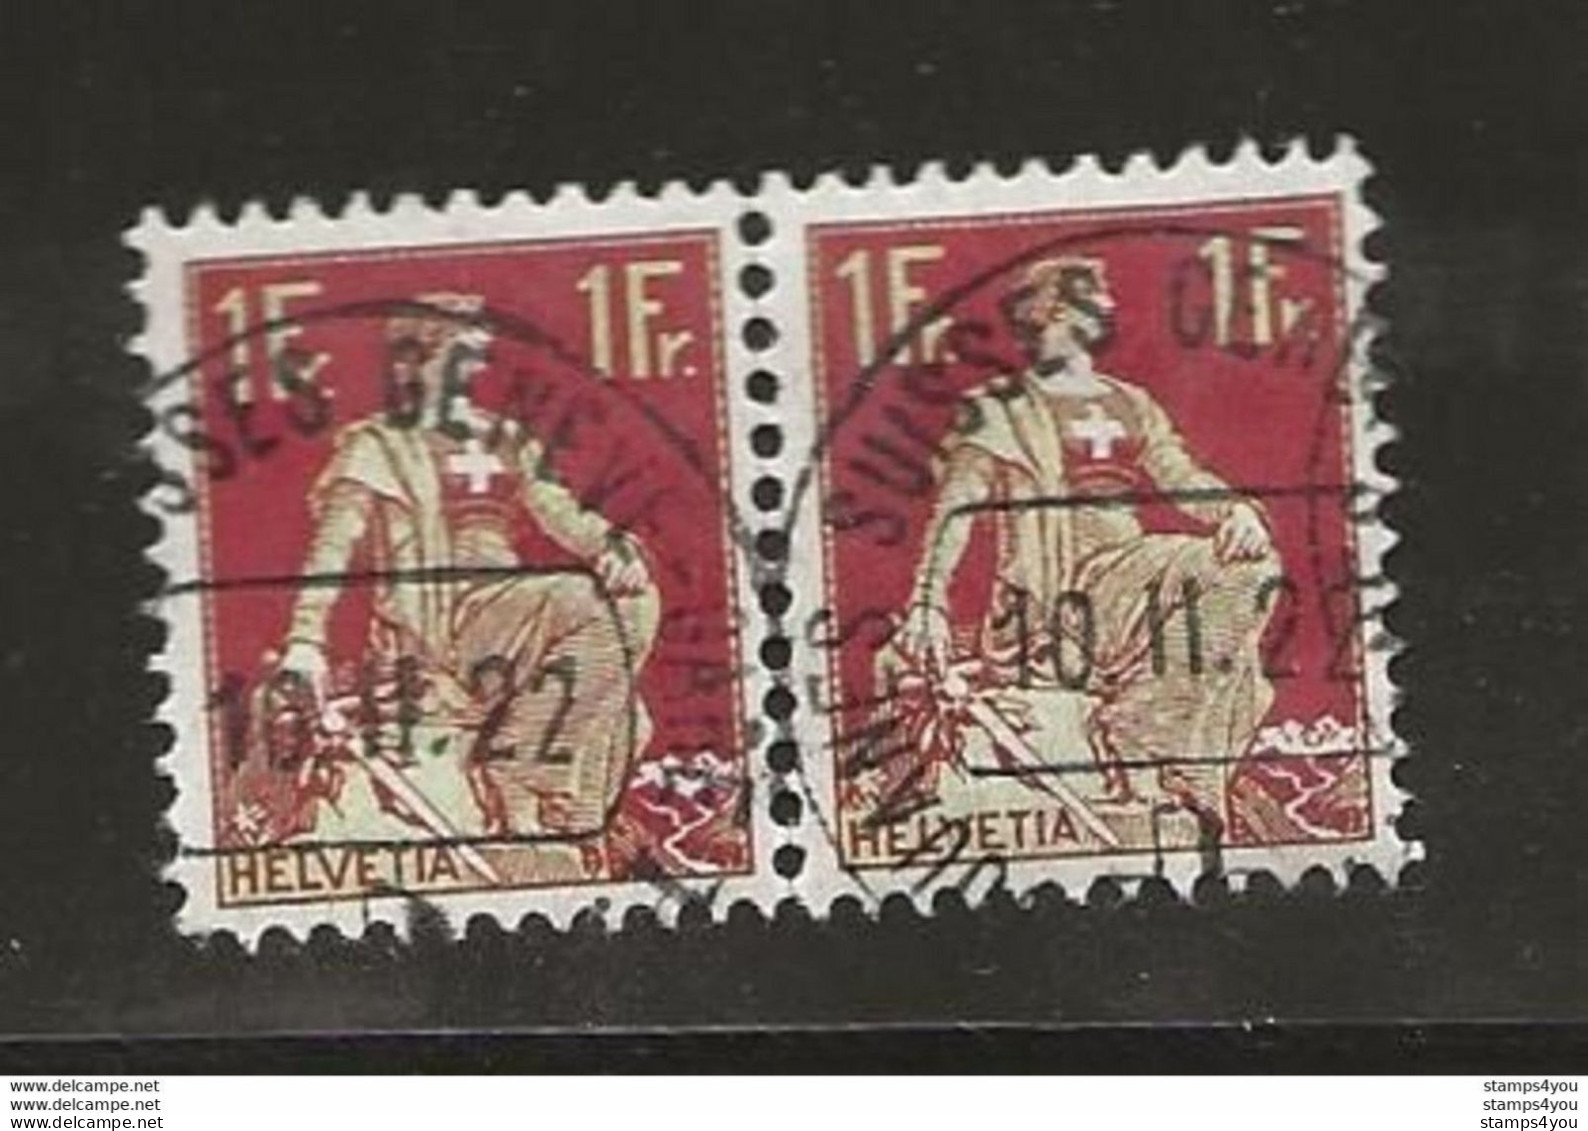 400 - Timbres Avec Cachet Douane Suisse Genève 1922 - Postmark Collection